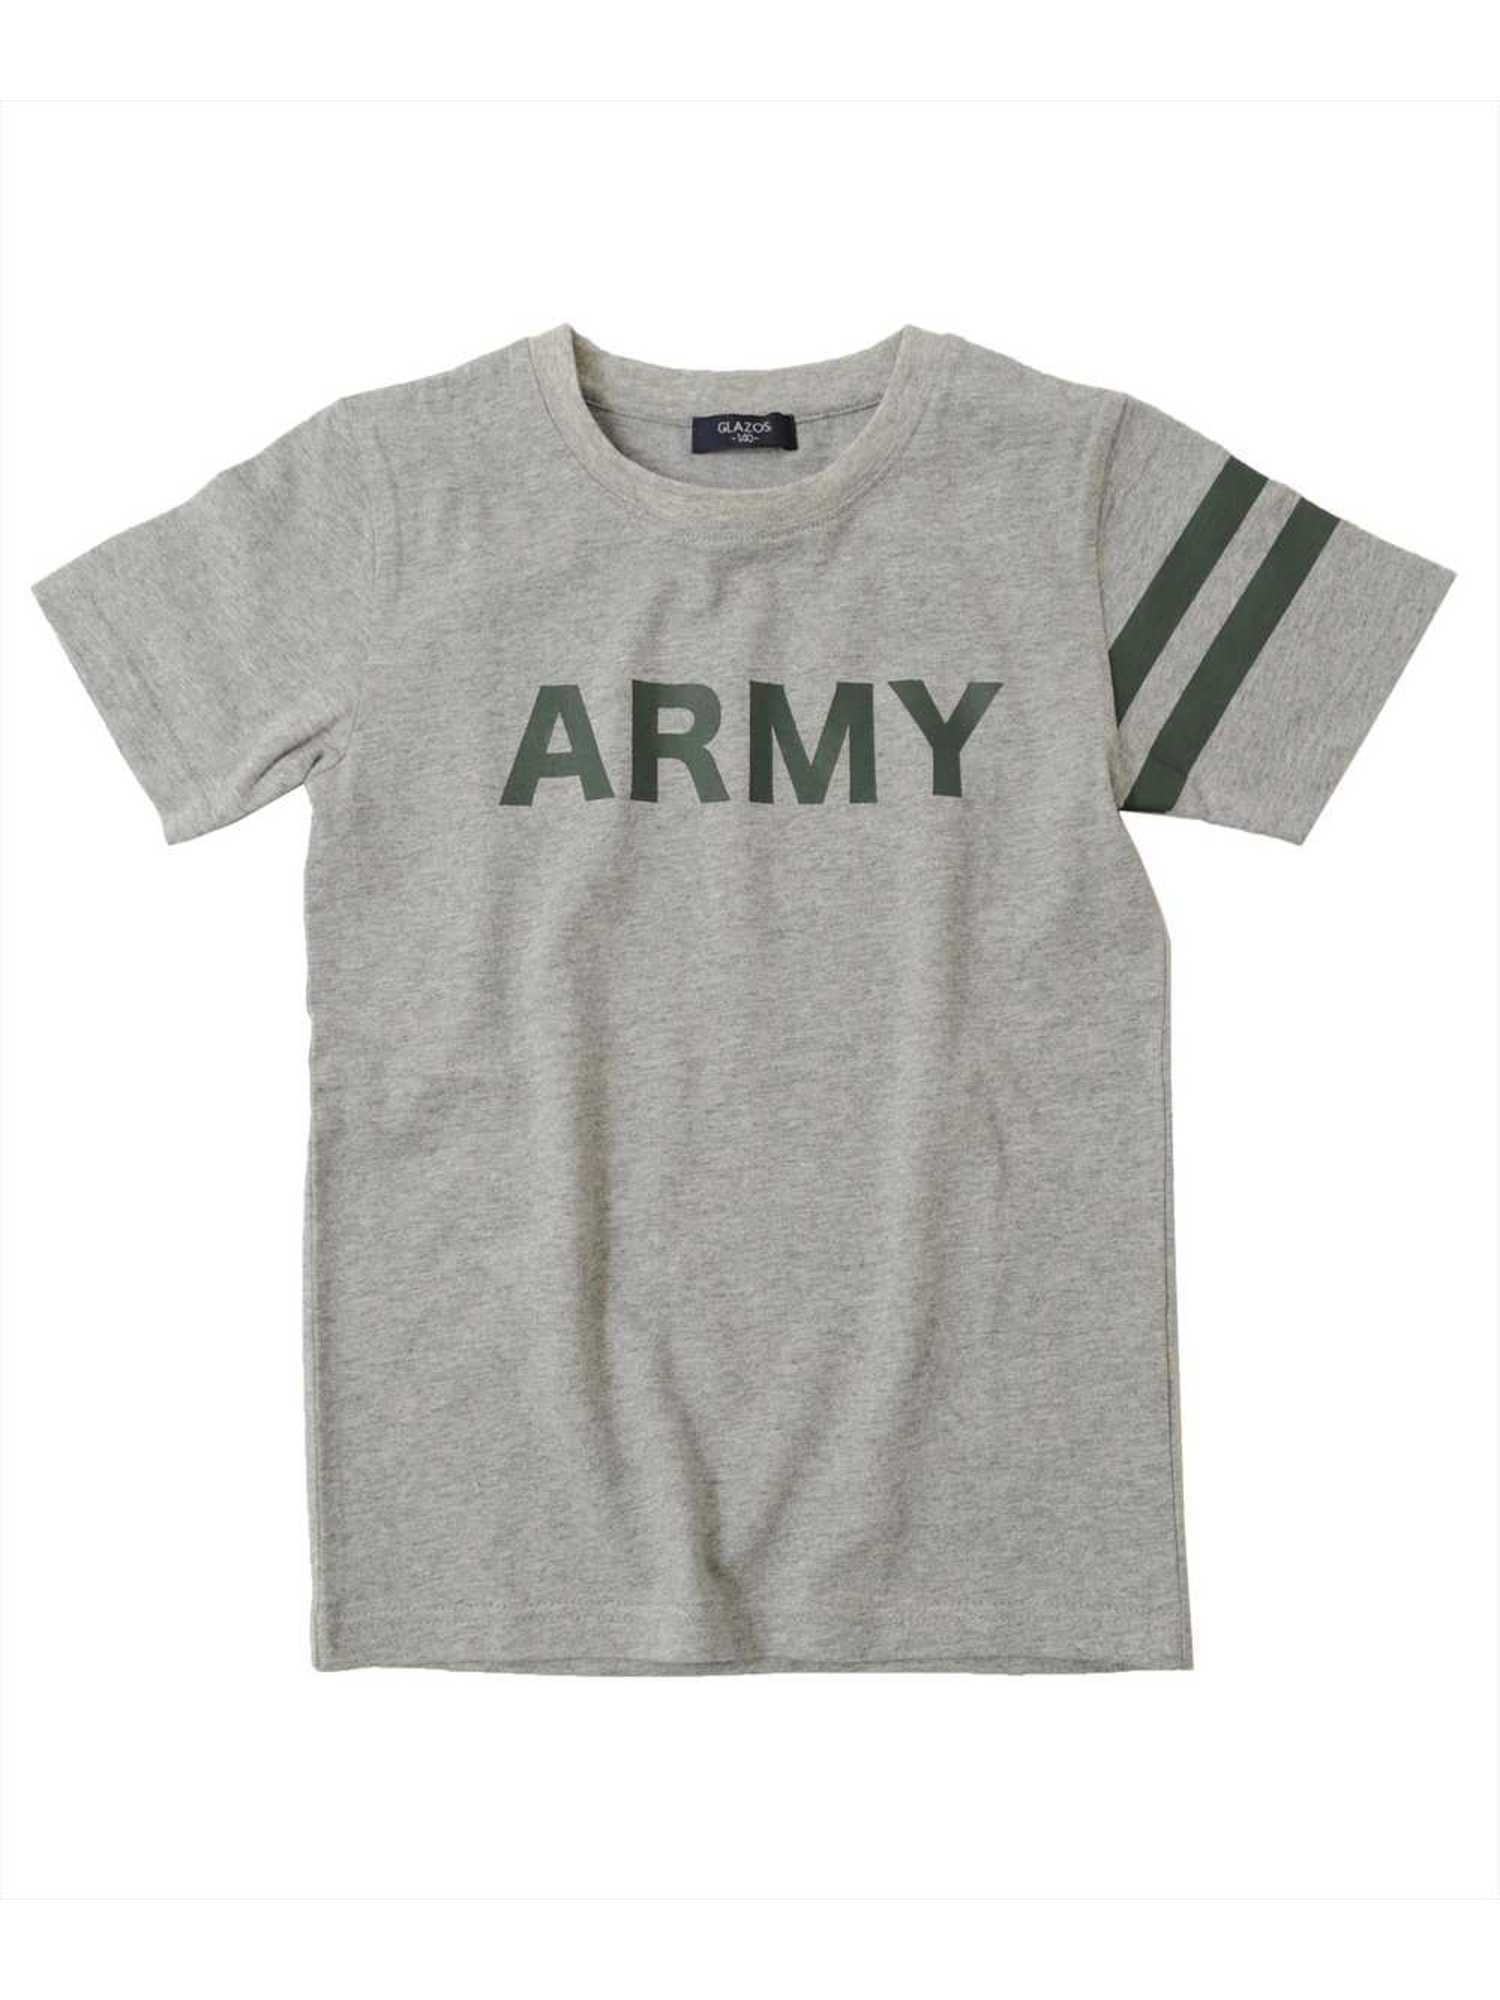 【6,000円(税込)以上のお買物で全国送料無料。】【GLAZOS】天竺・ARMYロゴプリント半袖Tシャツ